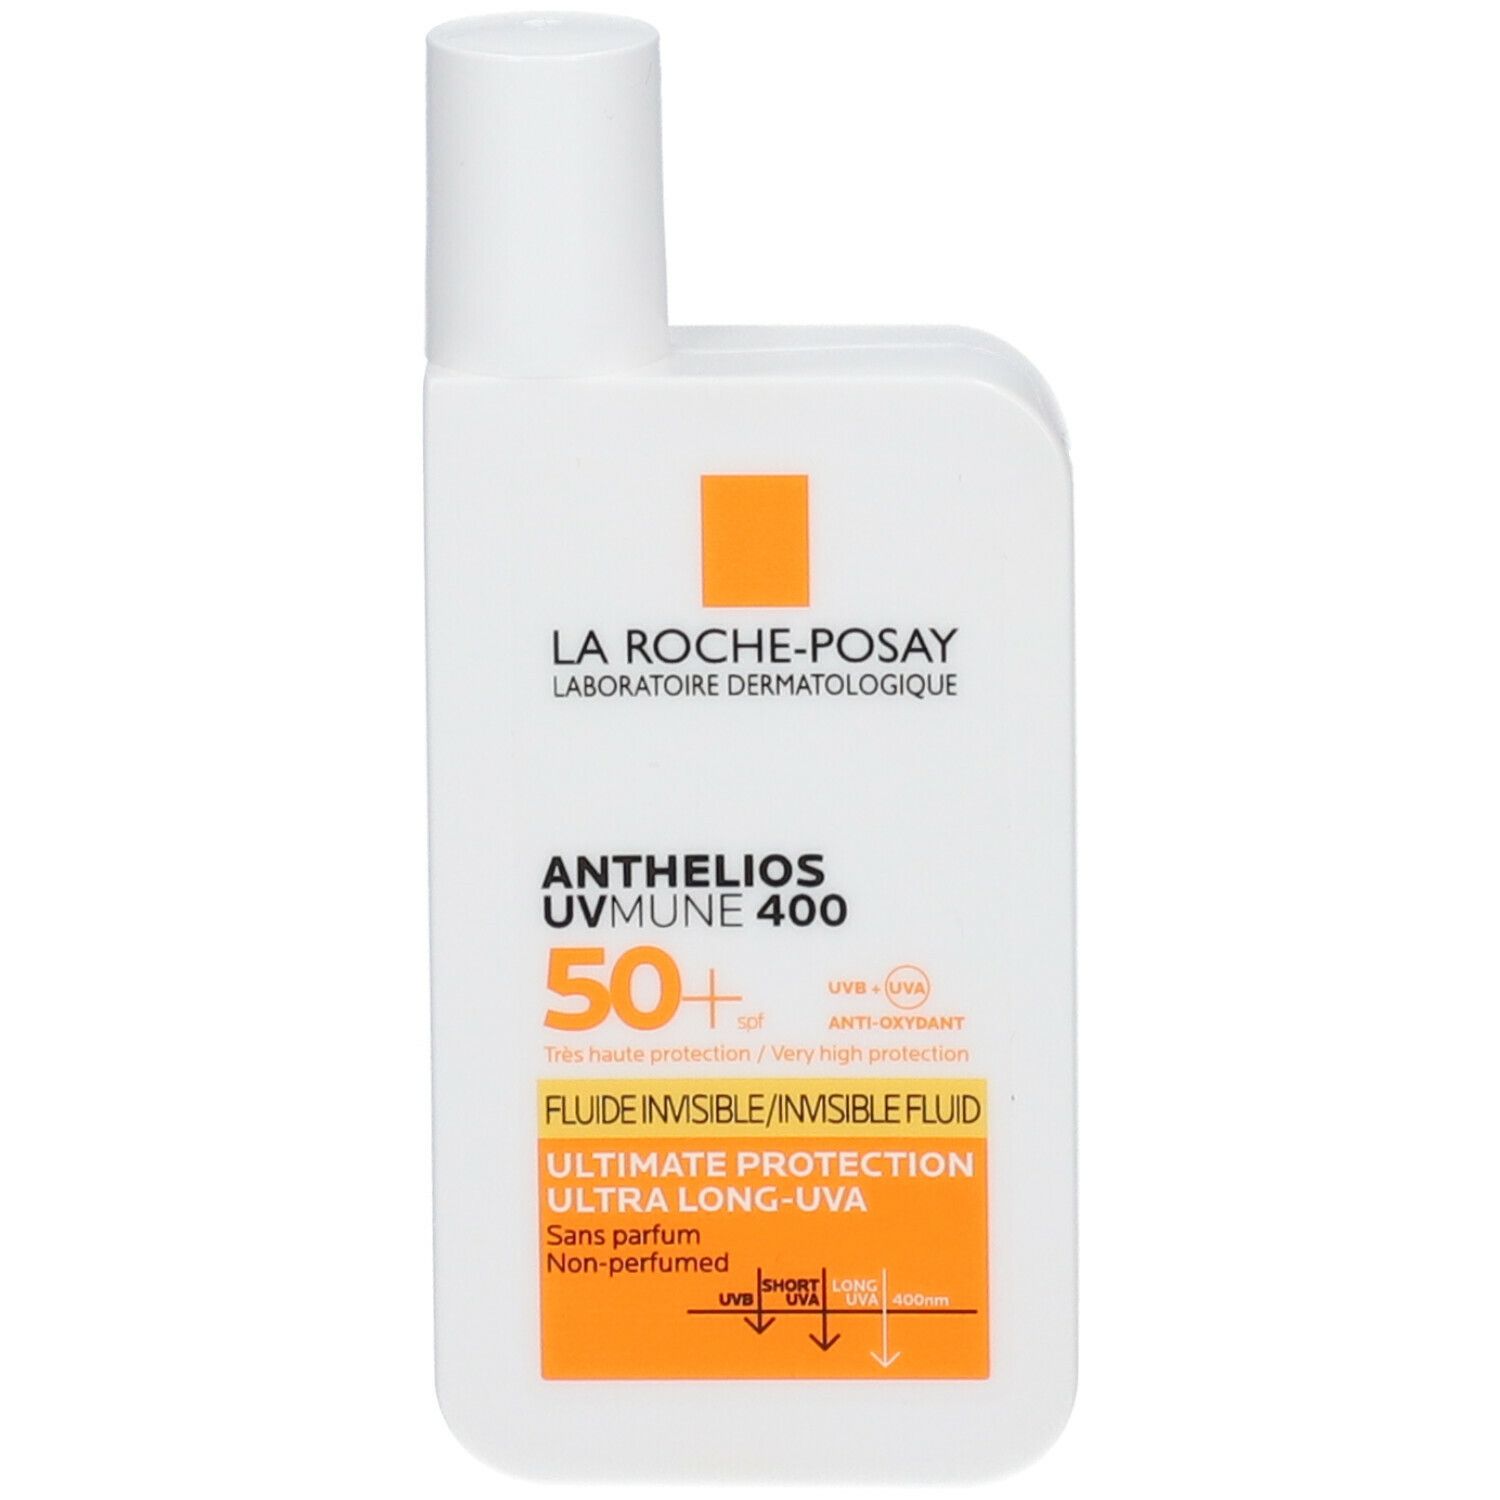 LA Roche Posay Anthelios UV Mune Crème Solaire Pocket Fluide Sans Parfum Spf50+